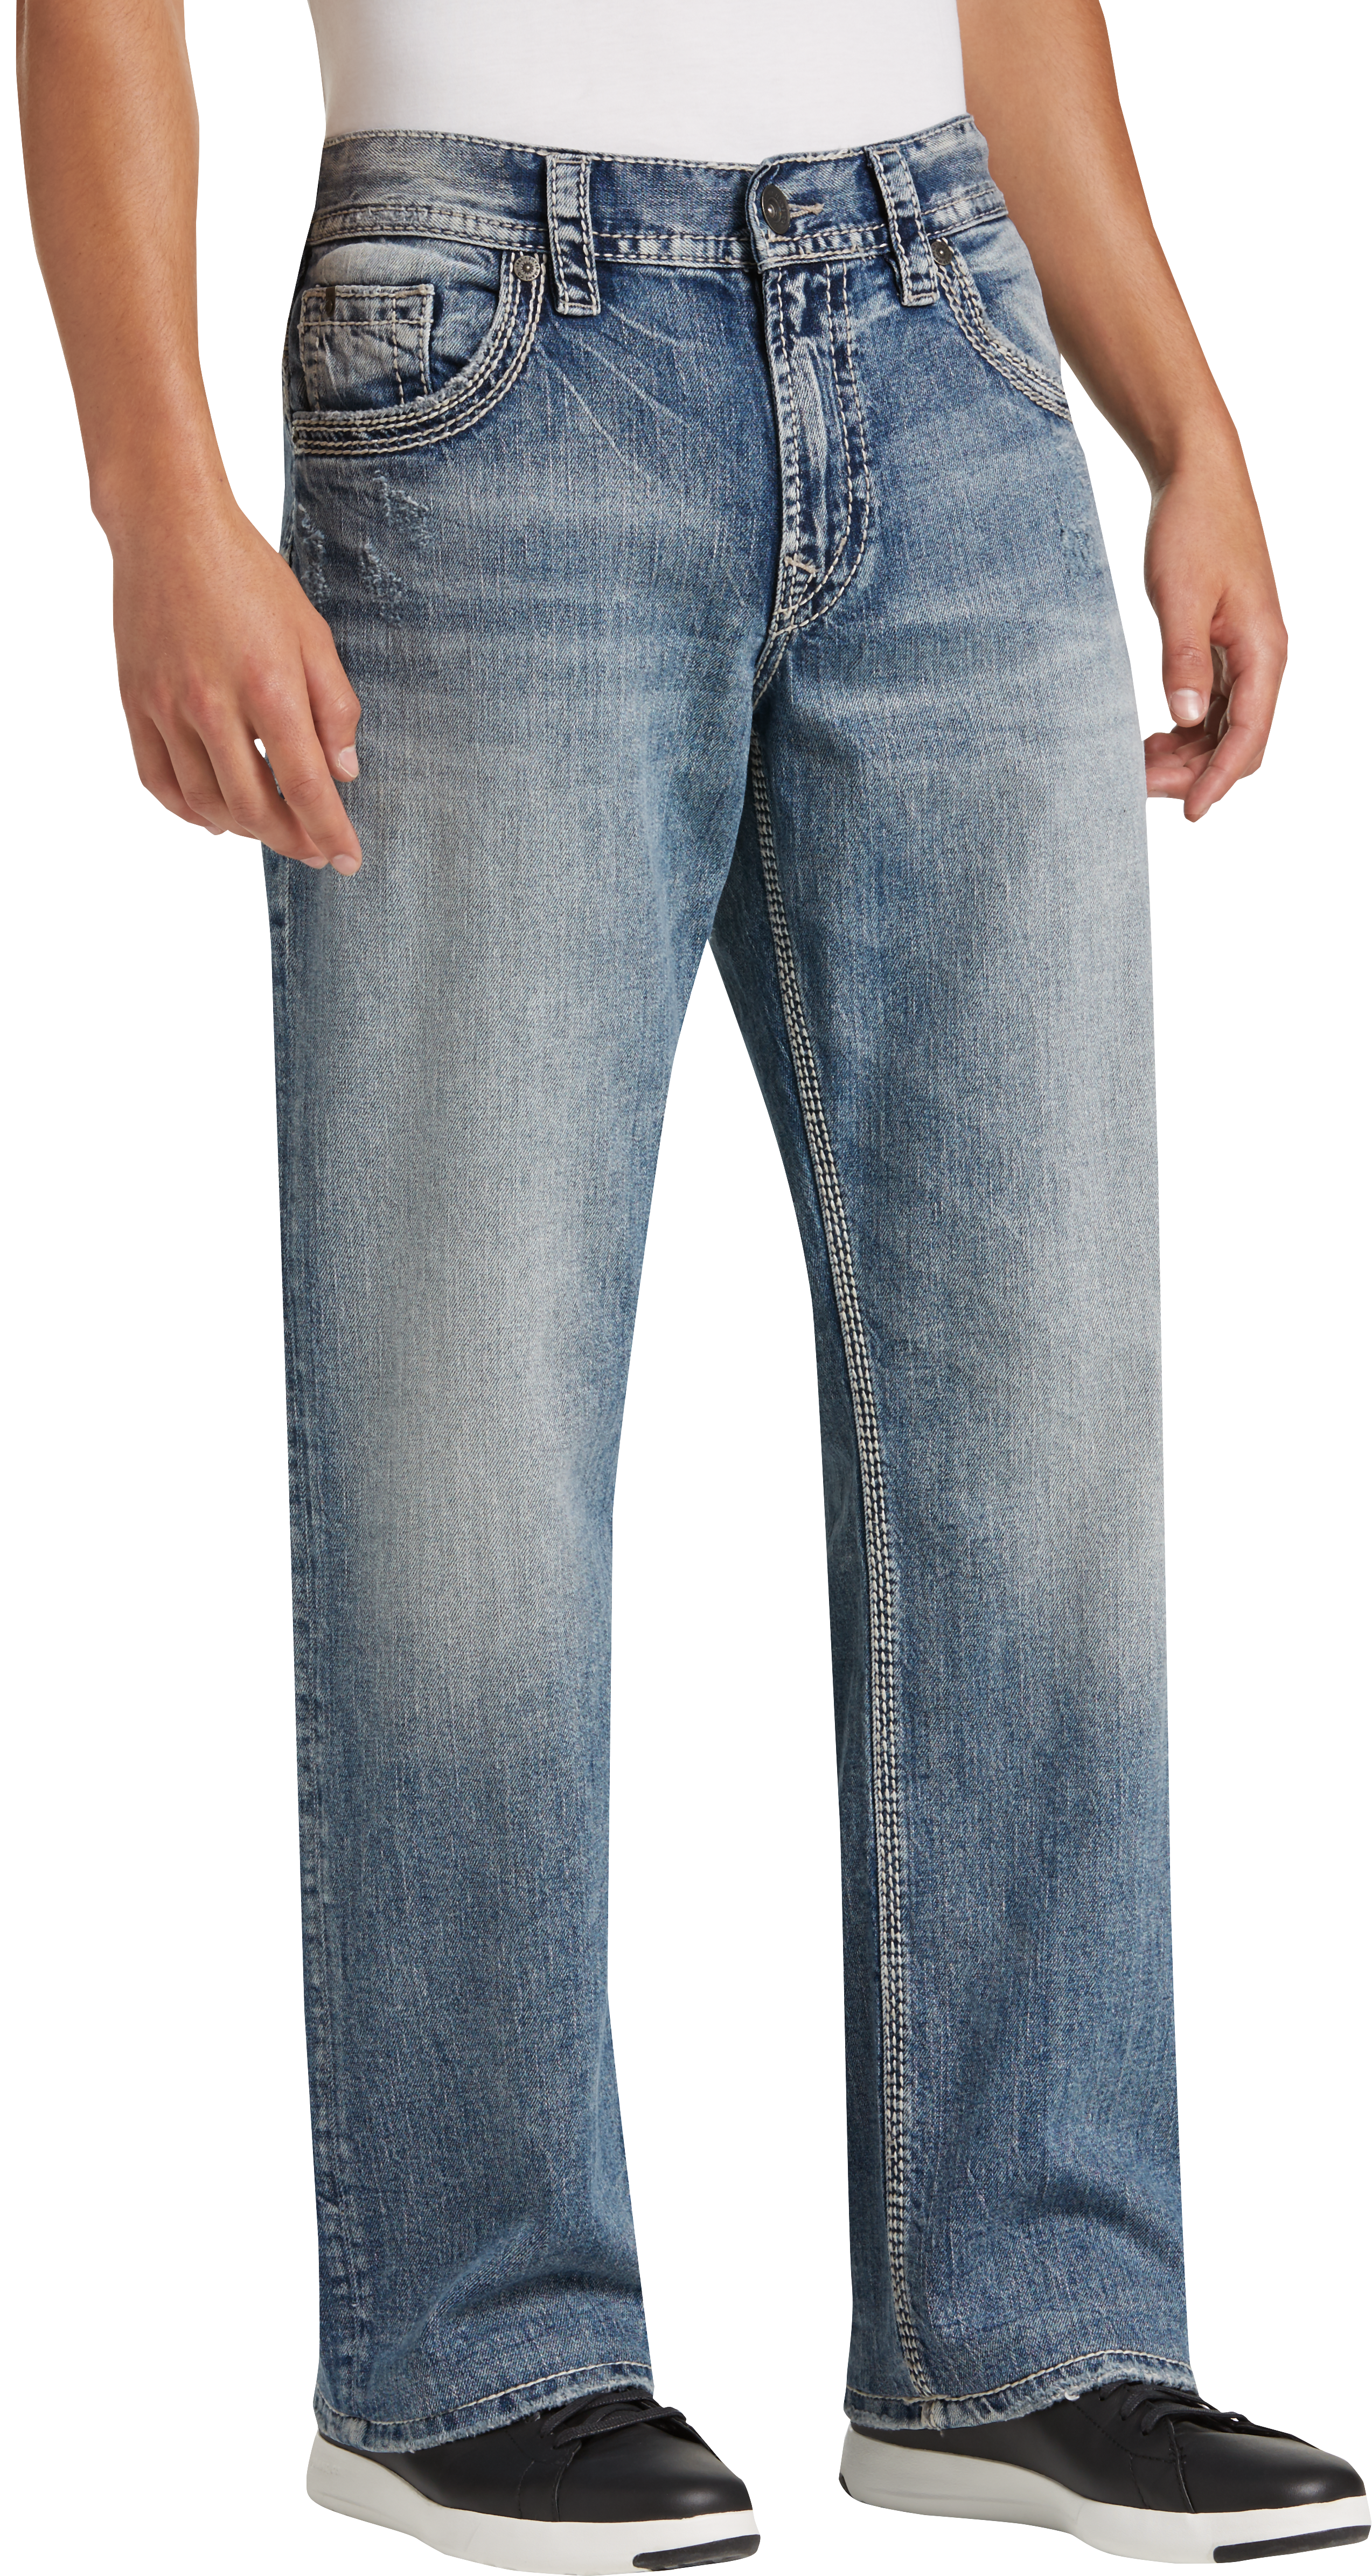 men's wearhouse silver jeans